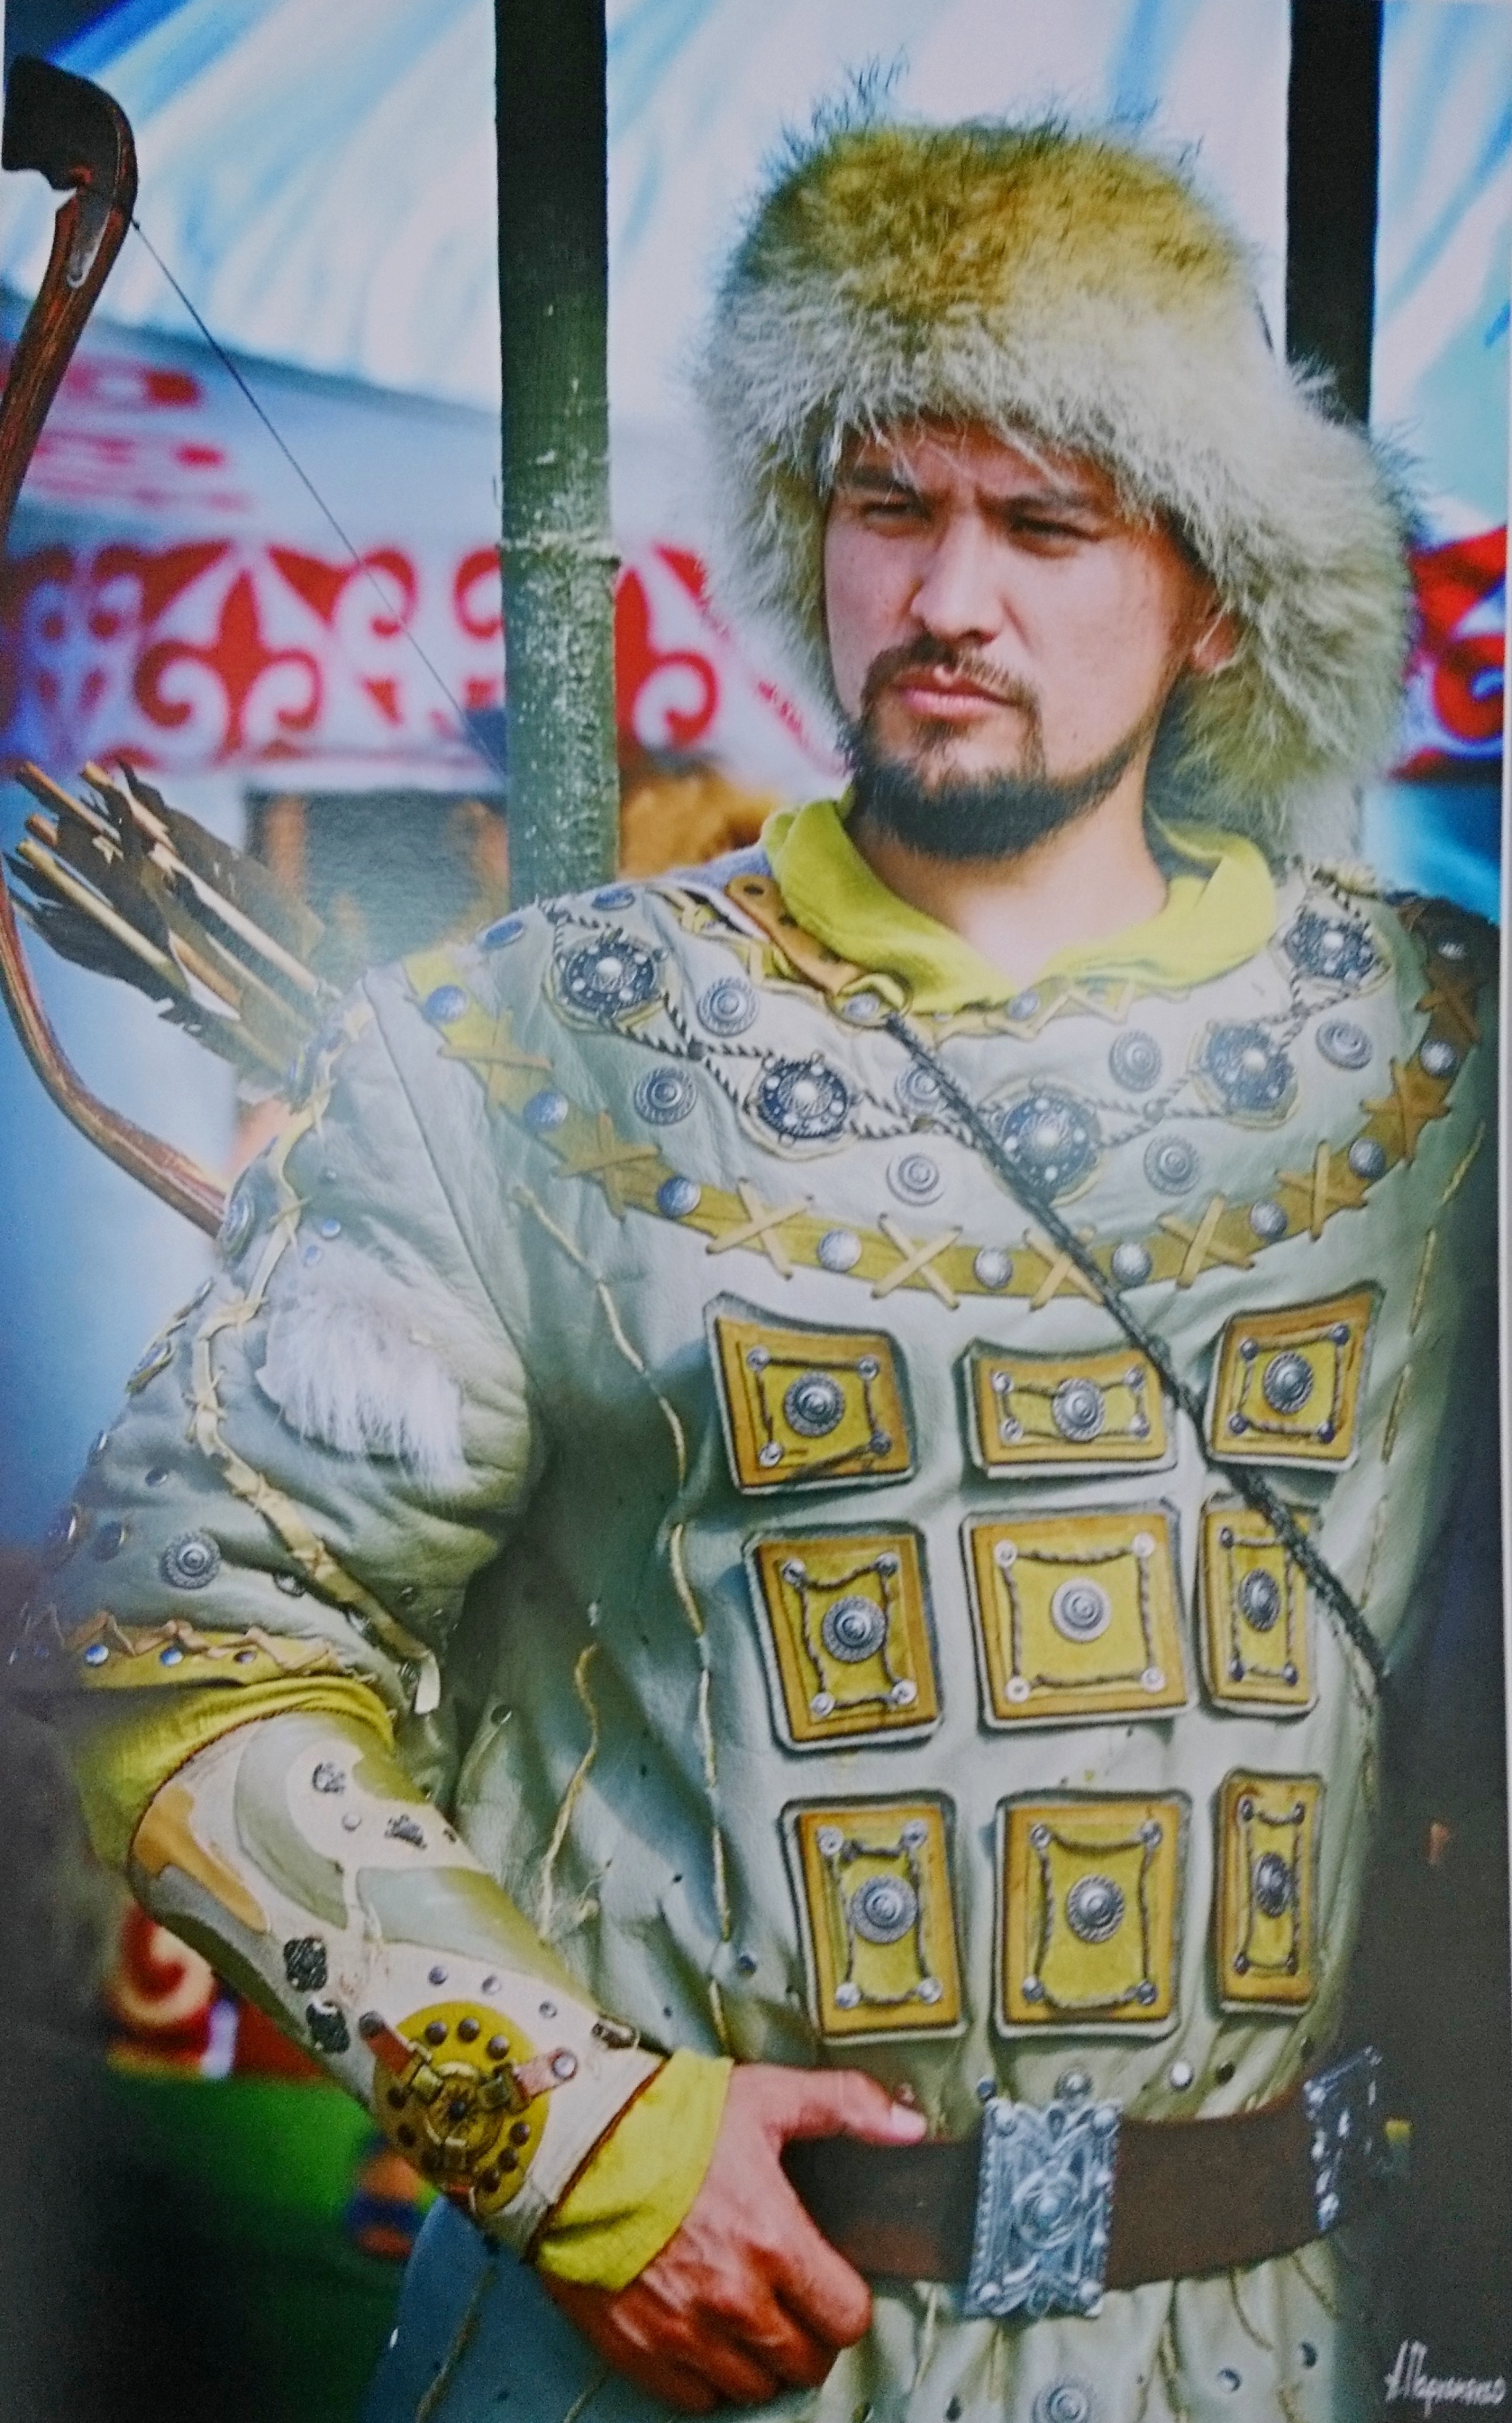 Сразу две фотовыставки, рассказывающие о современной казахской культуре, открылись в арт-зале бердского музея, ул.Спортивная,11 с 27 ноября по 20 декабря